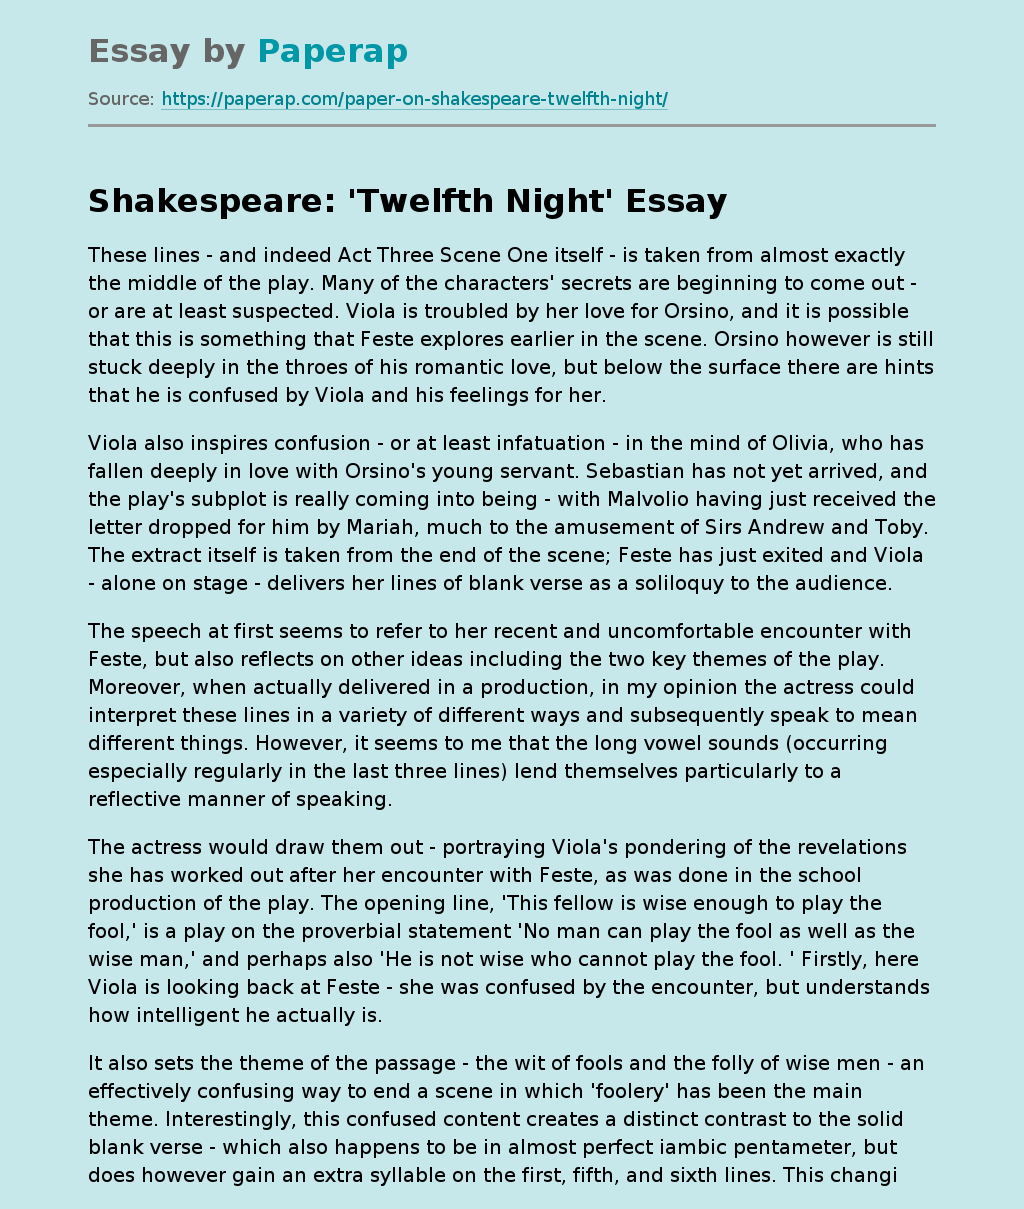 Shakespeares 'Twelfth Night'